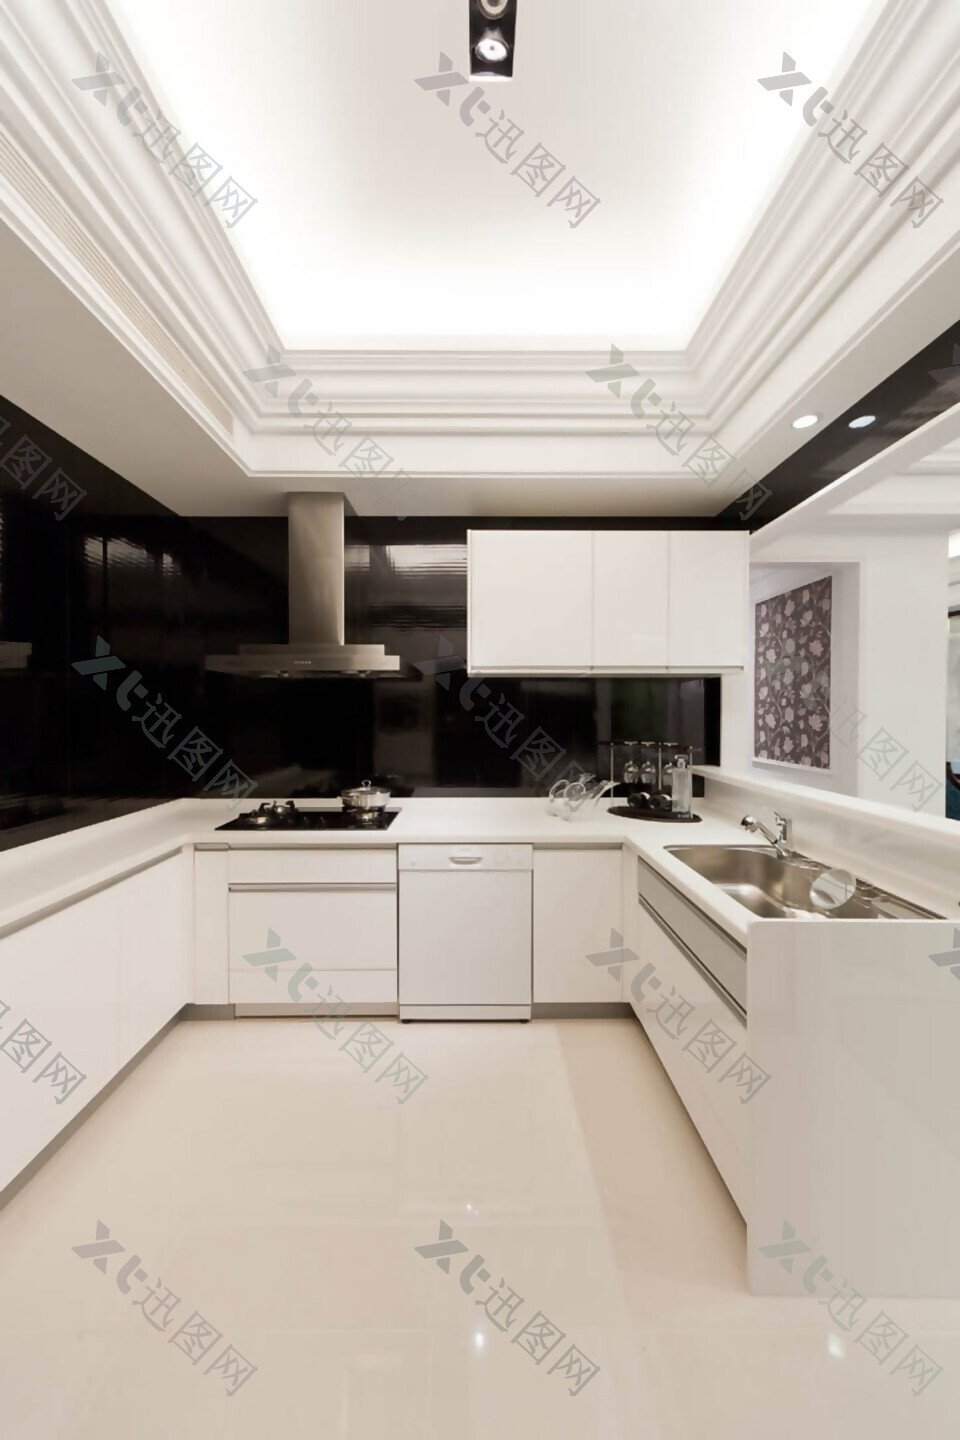 现代简约风室内设计餐厅白色整体橱柜效果图JPG